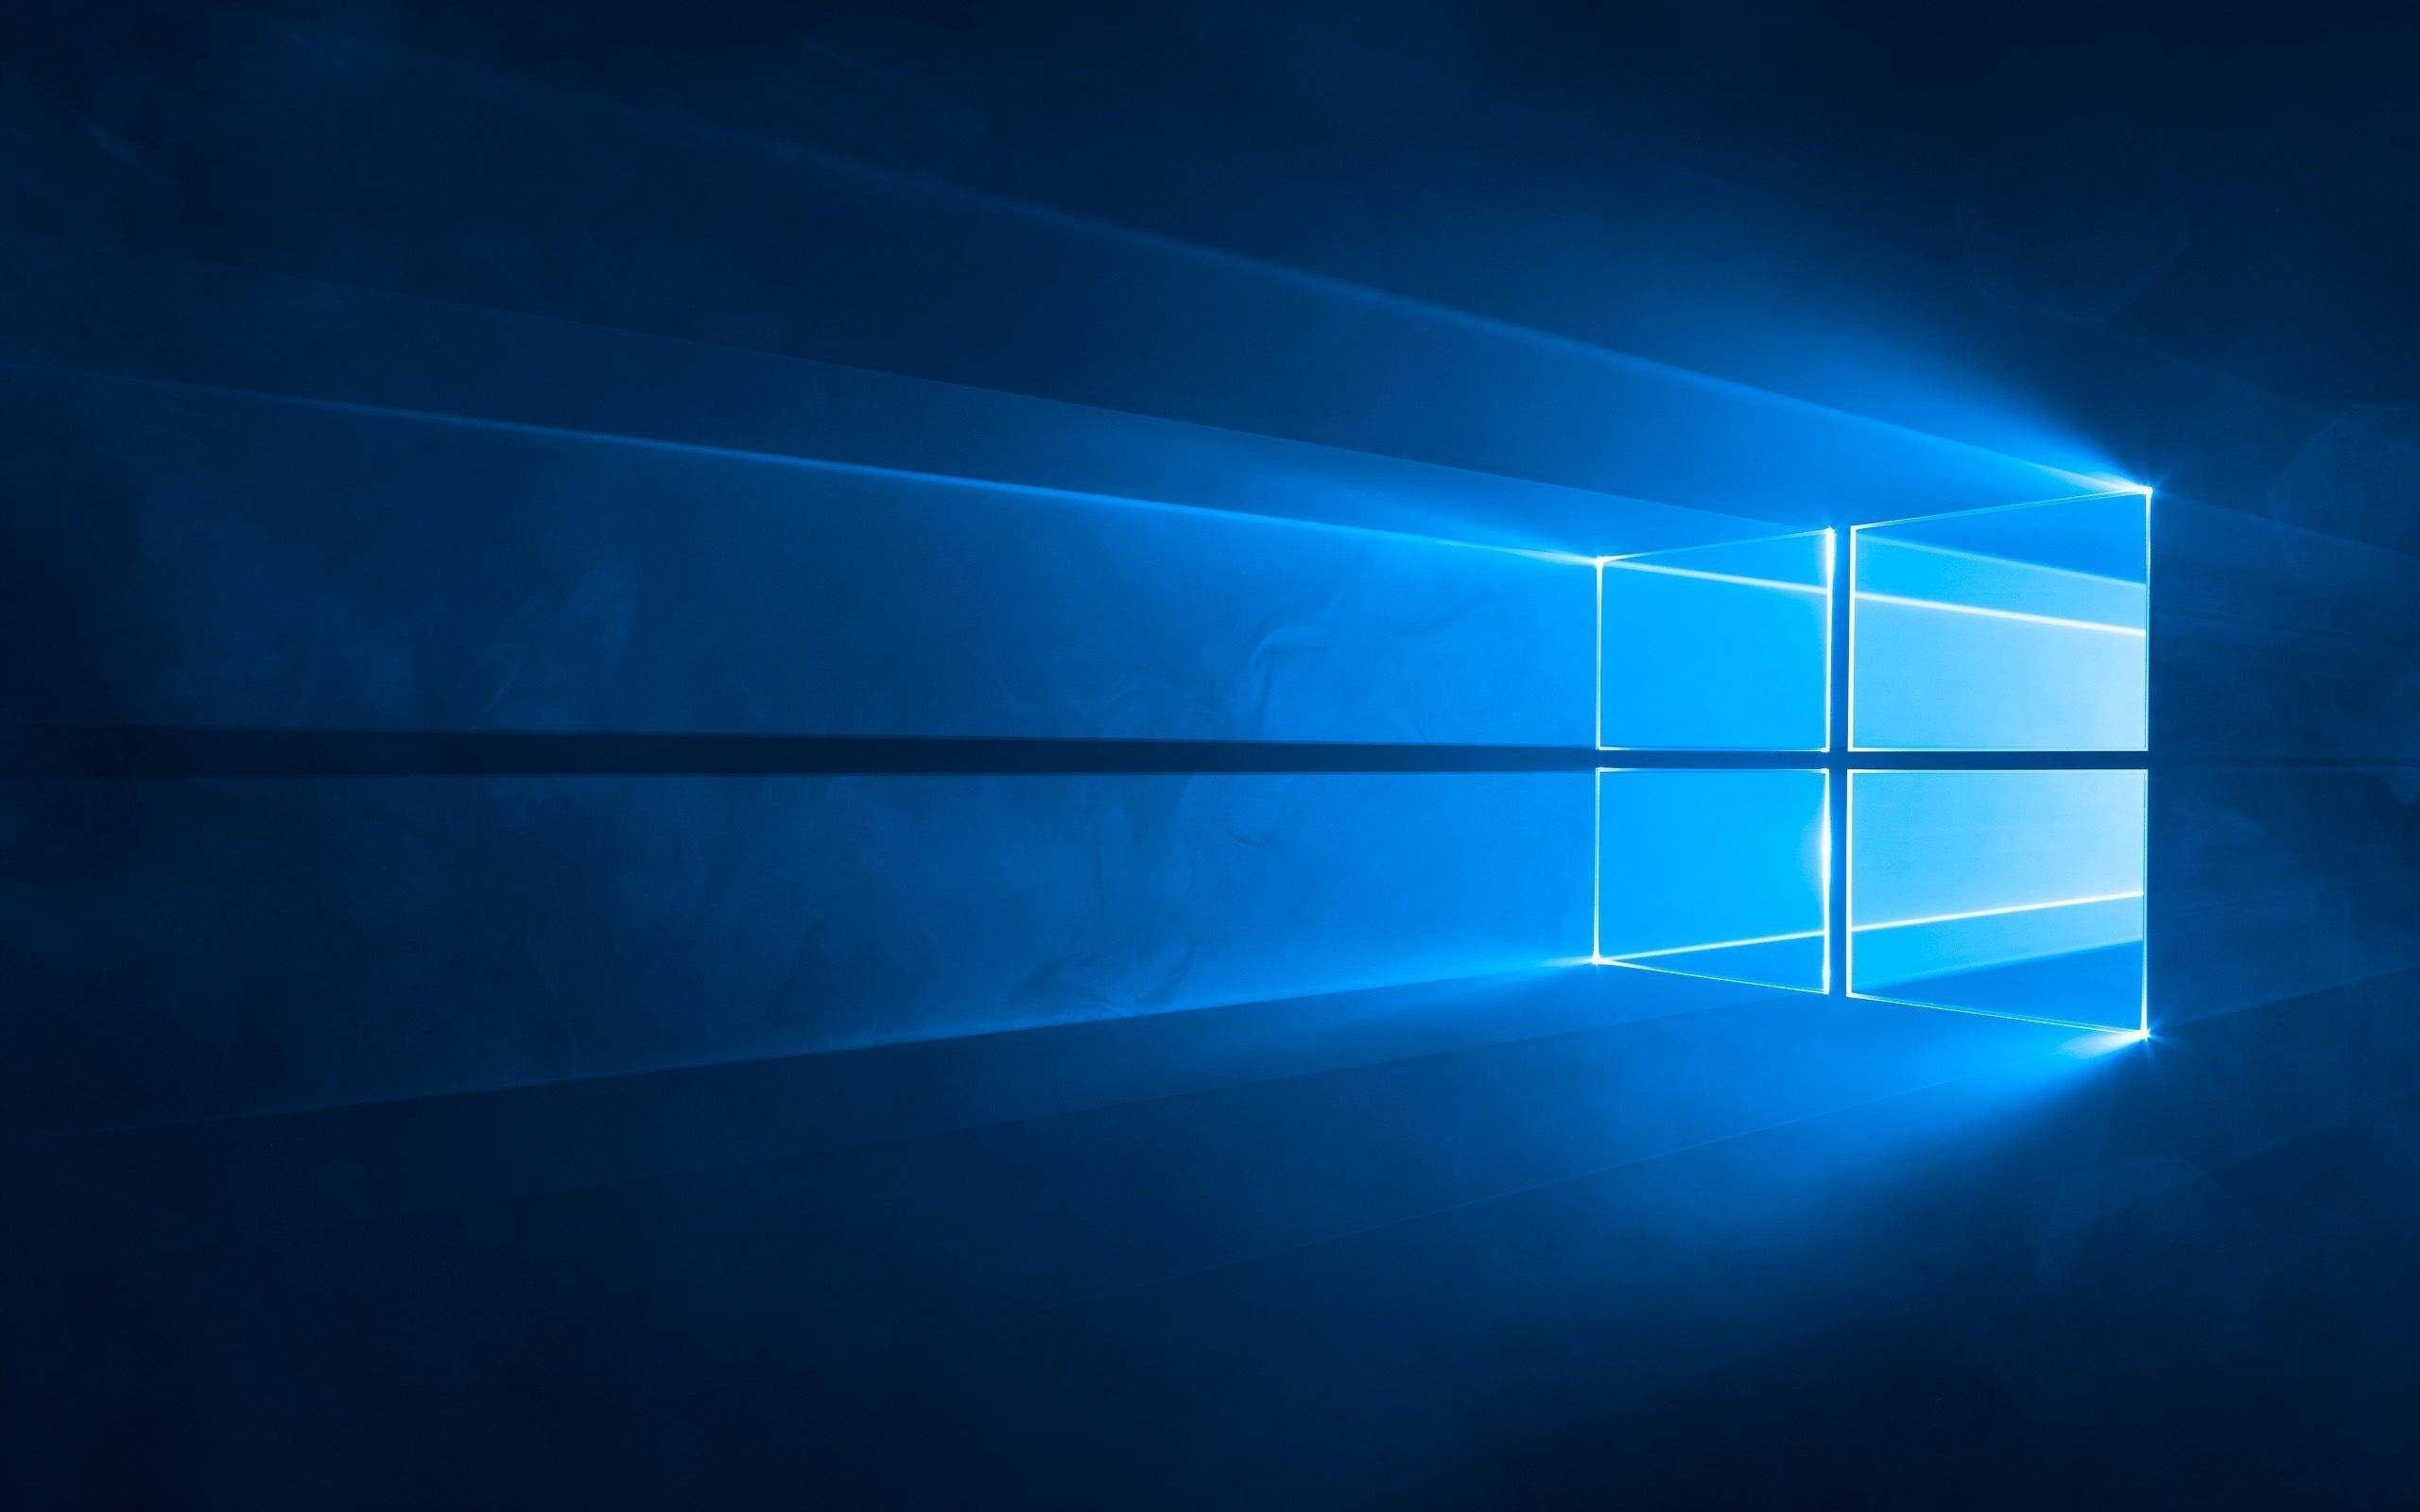  Bildschirm Hintergrundbild 2560x1600. Windows 10: Standard Wallpaper Für Den Desktop (Hero Hintergrundbild)